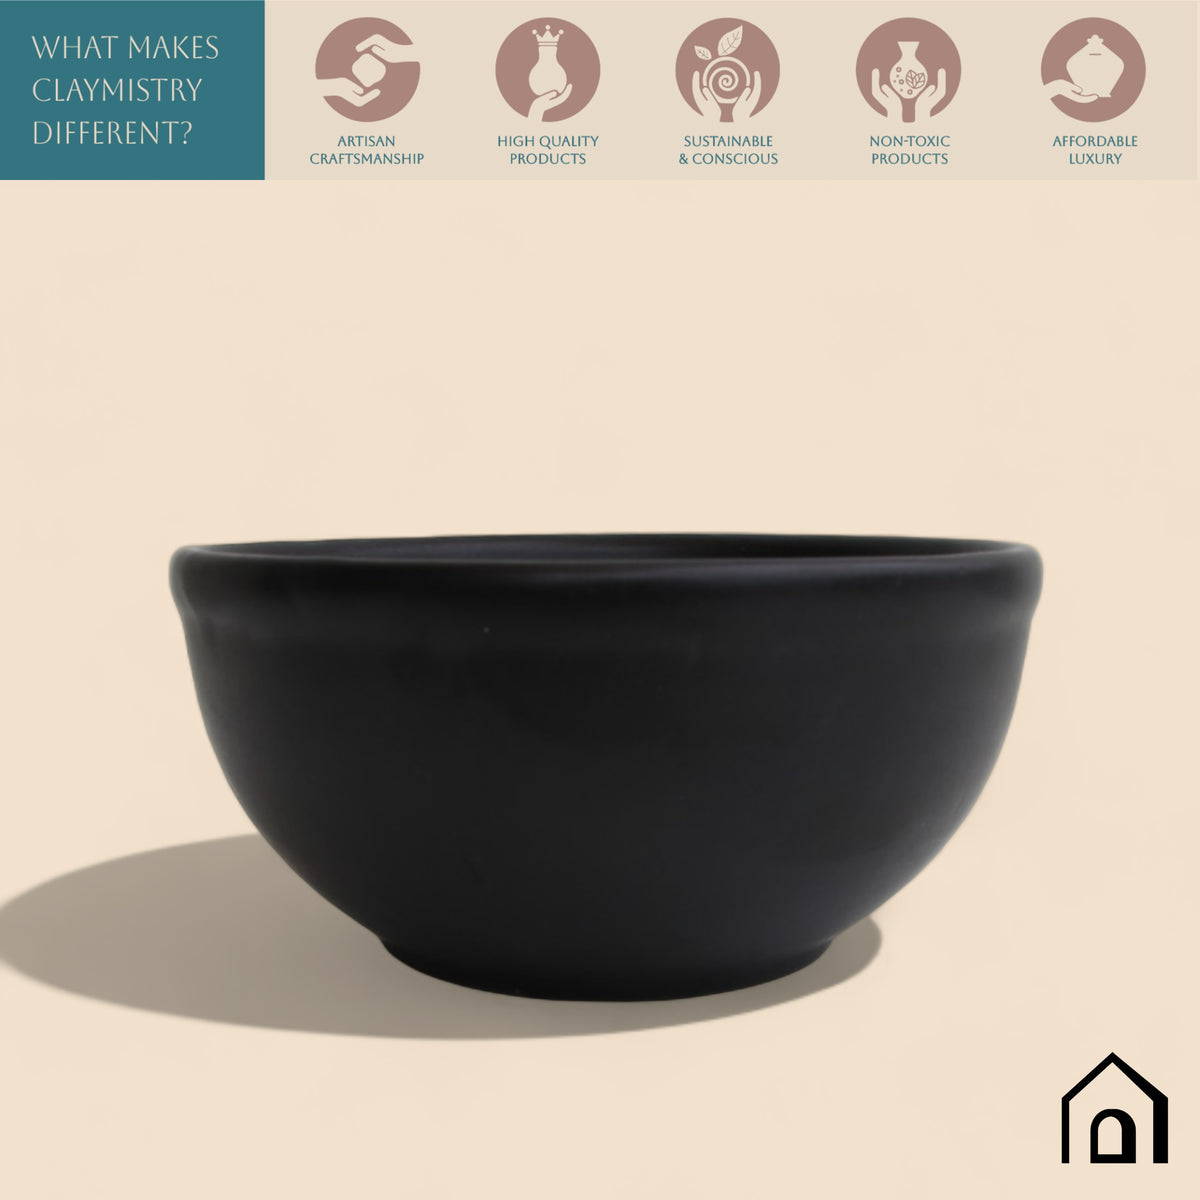 Claymistry Ceramic Black Serving Bowl | Set of 2 | 11cm * 11cm * 5cm | Matte Finish | Dishwasher & Microwave Safe | Salad, Cereal, Maggie, Fruit, Soup, Dessert, Mixing Bowl | Premium Kitchen Crockery